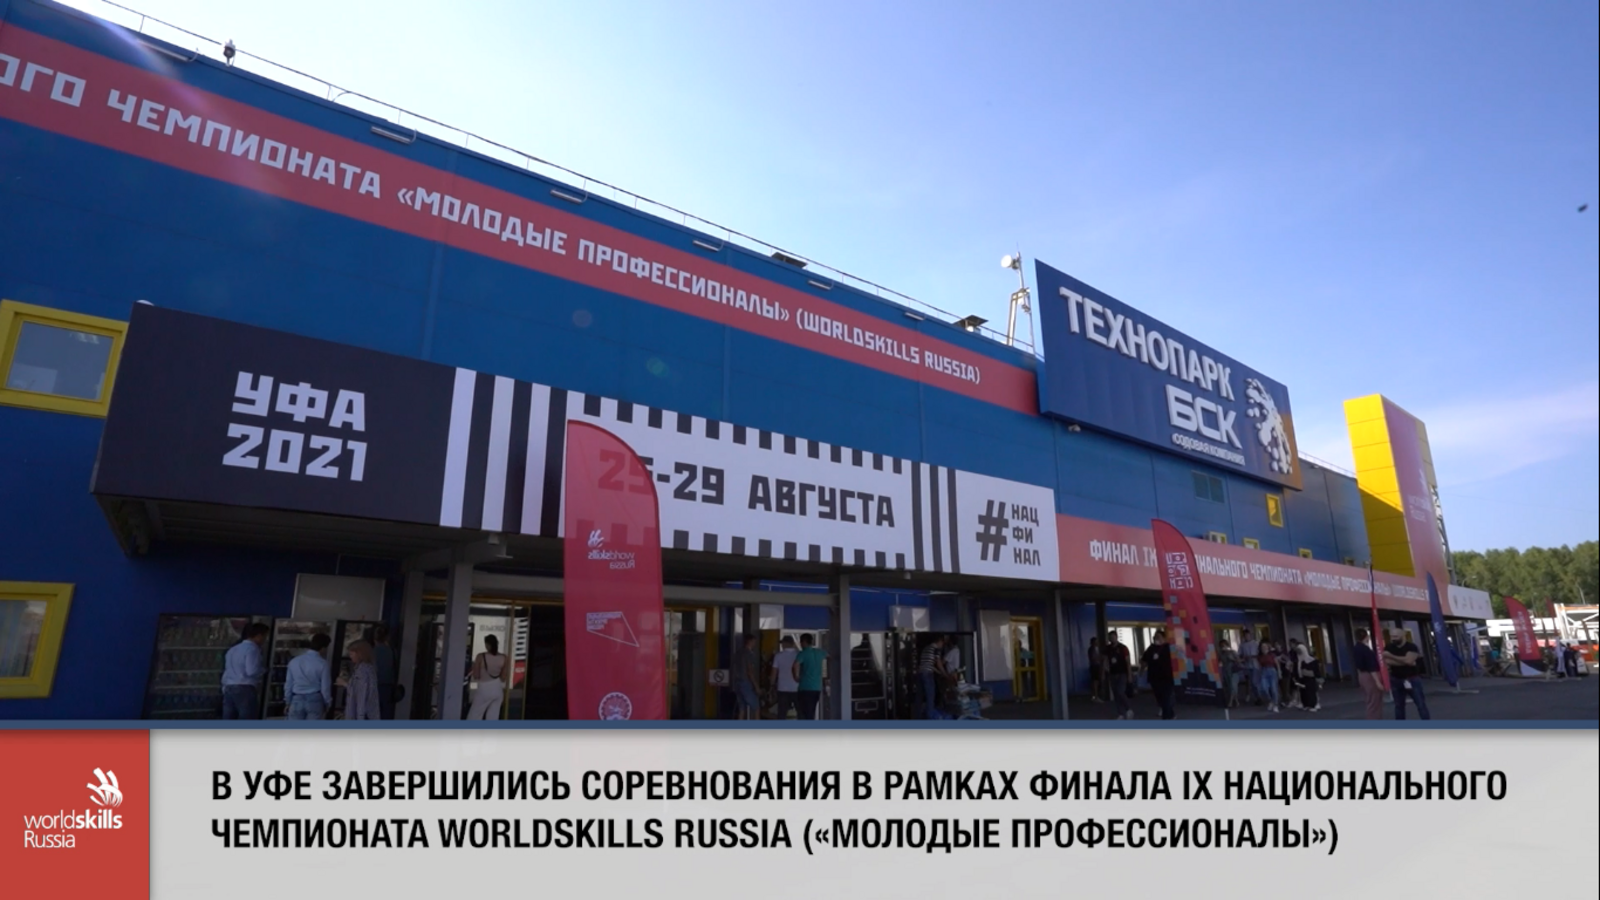 Соревнования в рамках финала IX национального чемпионата WorldSkills Russia («молодые профессионалы») в Уфе завершились.